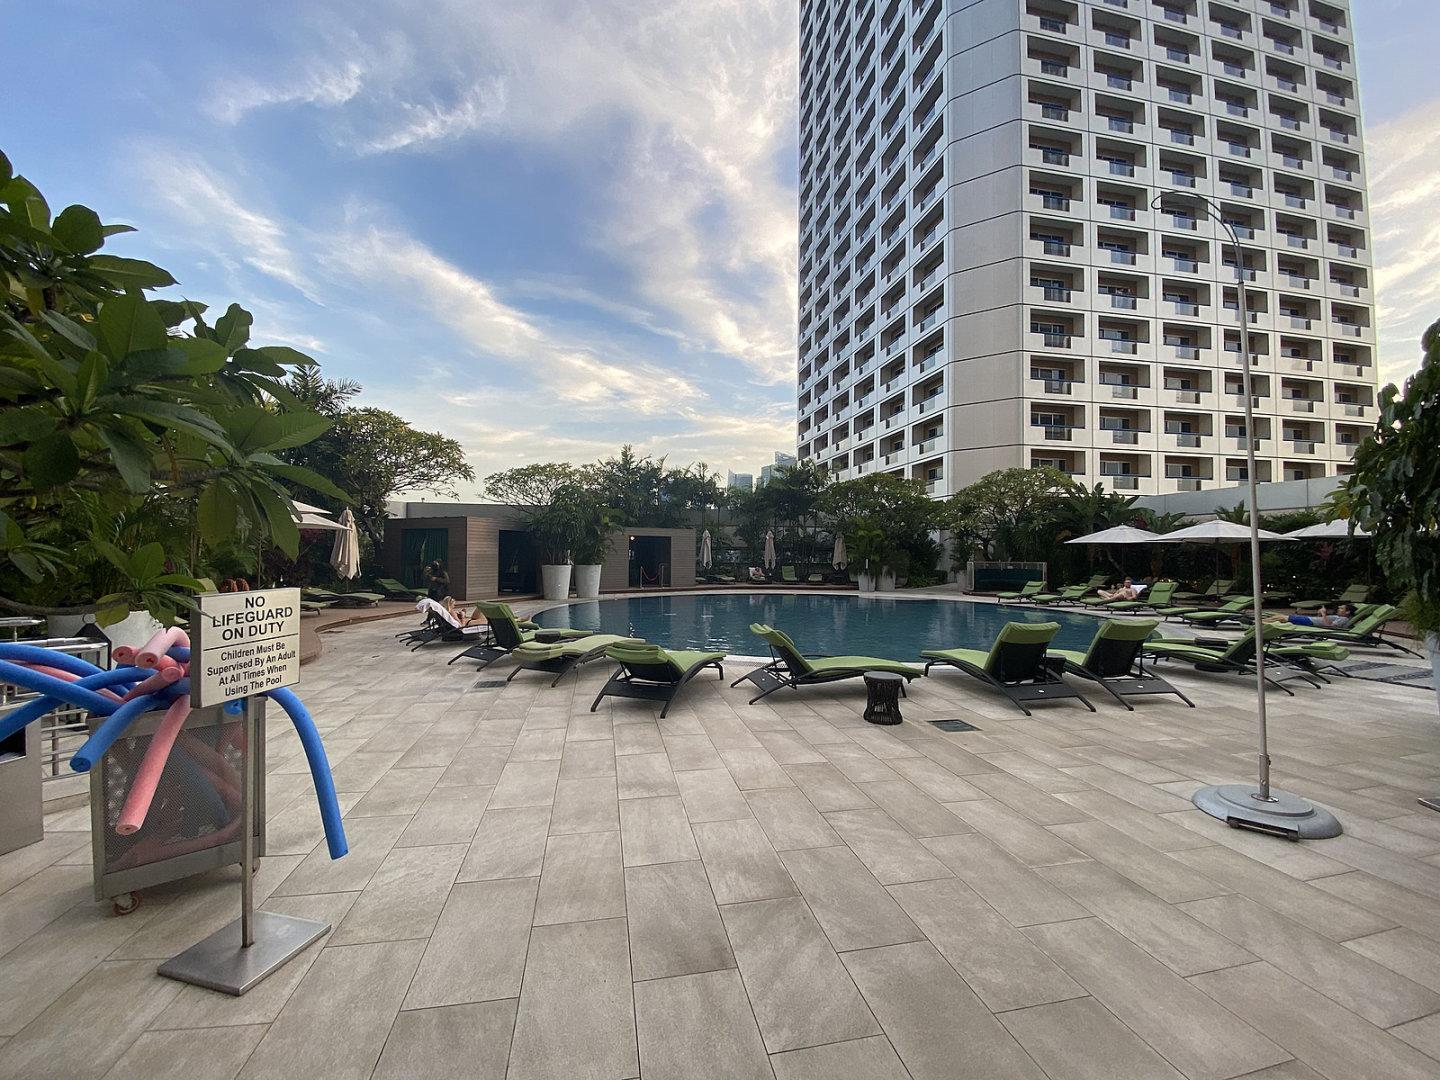 【刀塔2】TI11小組賽場地 - 新加坡費爾蒙酒店實景